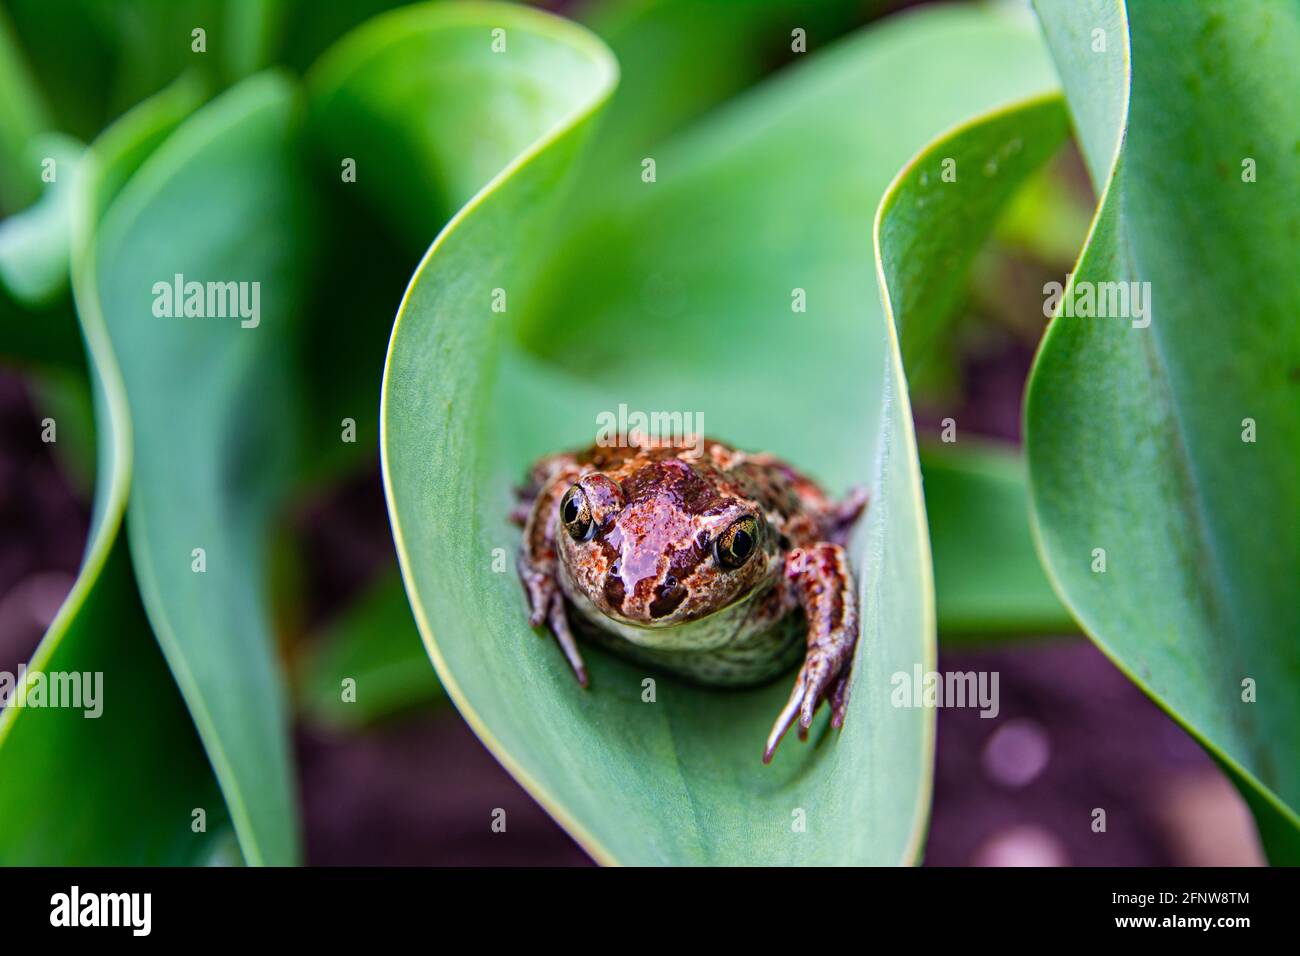 La grenouille brune commune européenne repose sur la feuille verte après la pluie. Rana temporaria gros plan. Banque D'Images